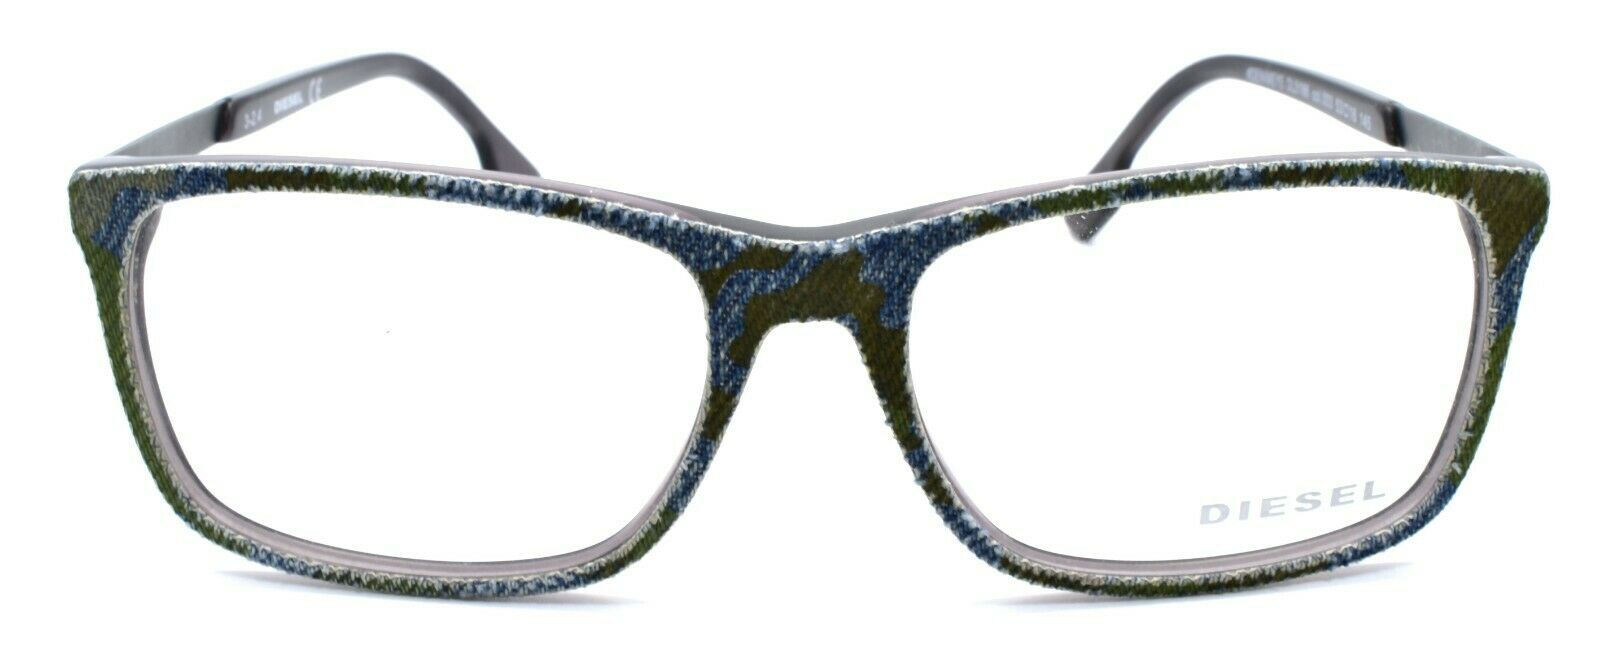 2-Diesel DL5166 003 Men's Eyeglasses Frames 53-16-145 Spotted Denim / Grey-664689704125-IKSpecs